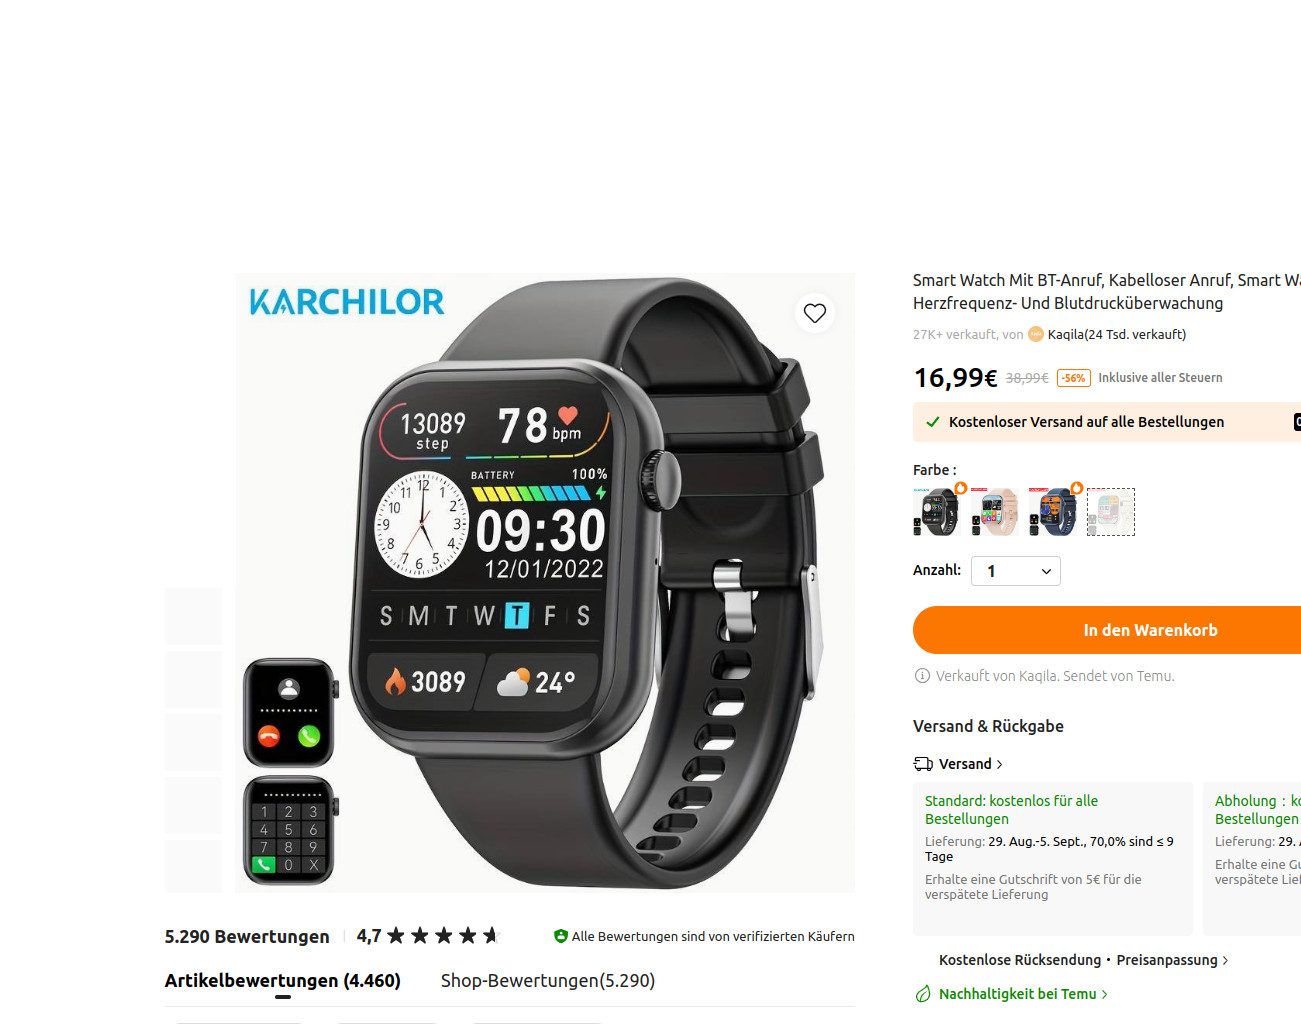 ... und auch Bluetooth fähige Smartwatches ab 10 Euro.